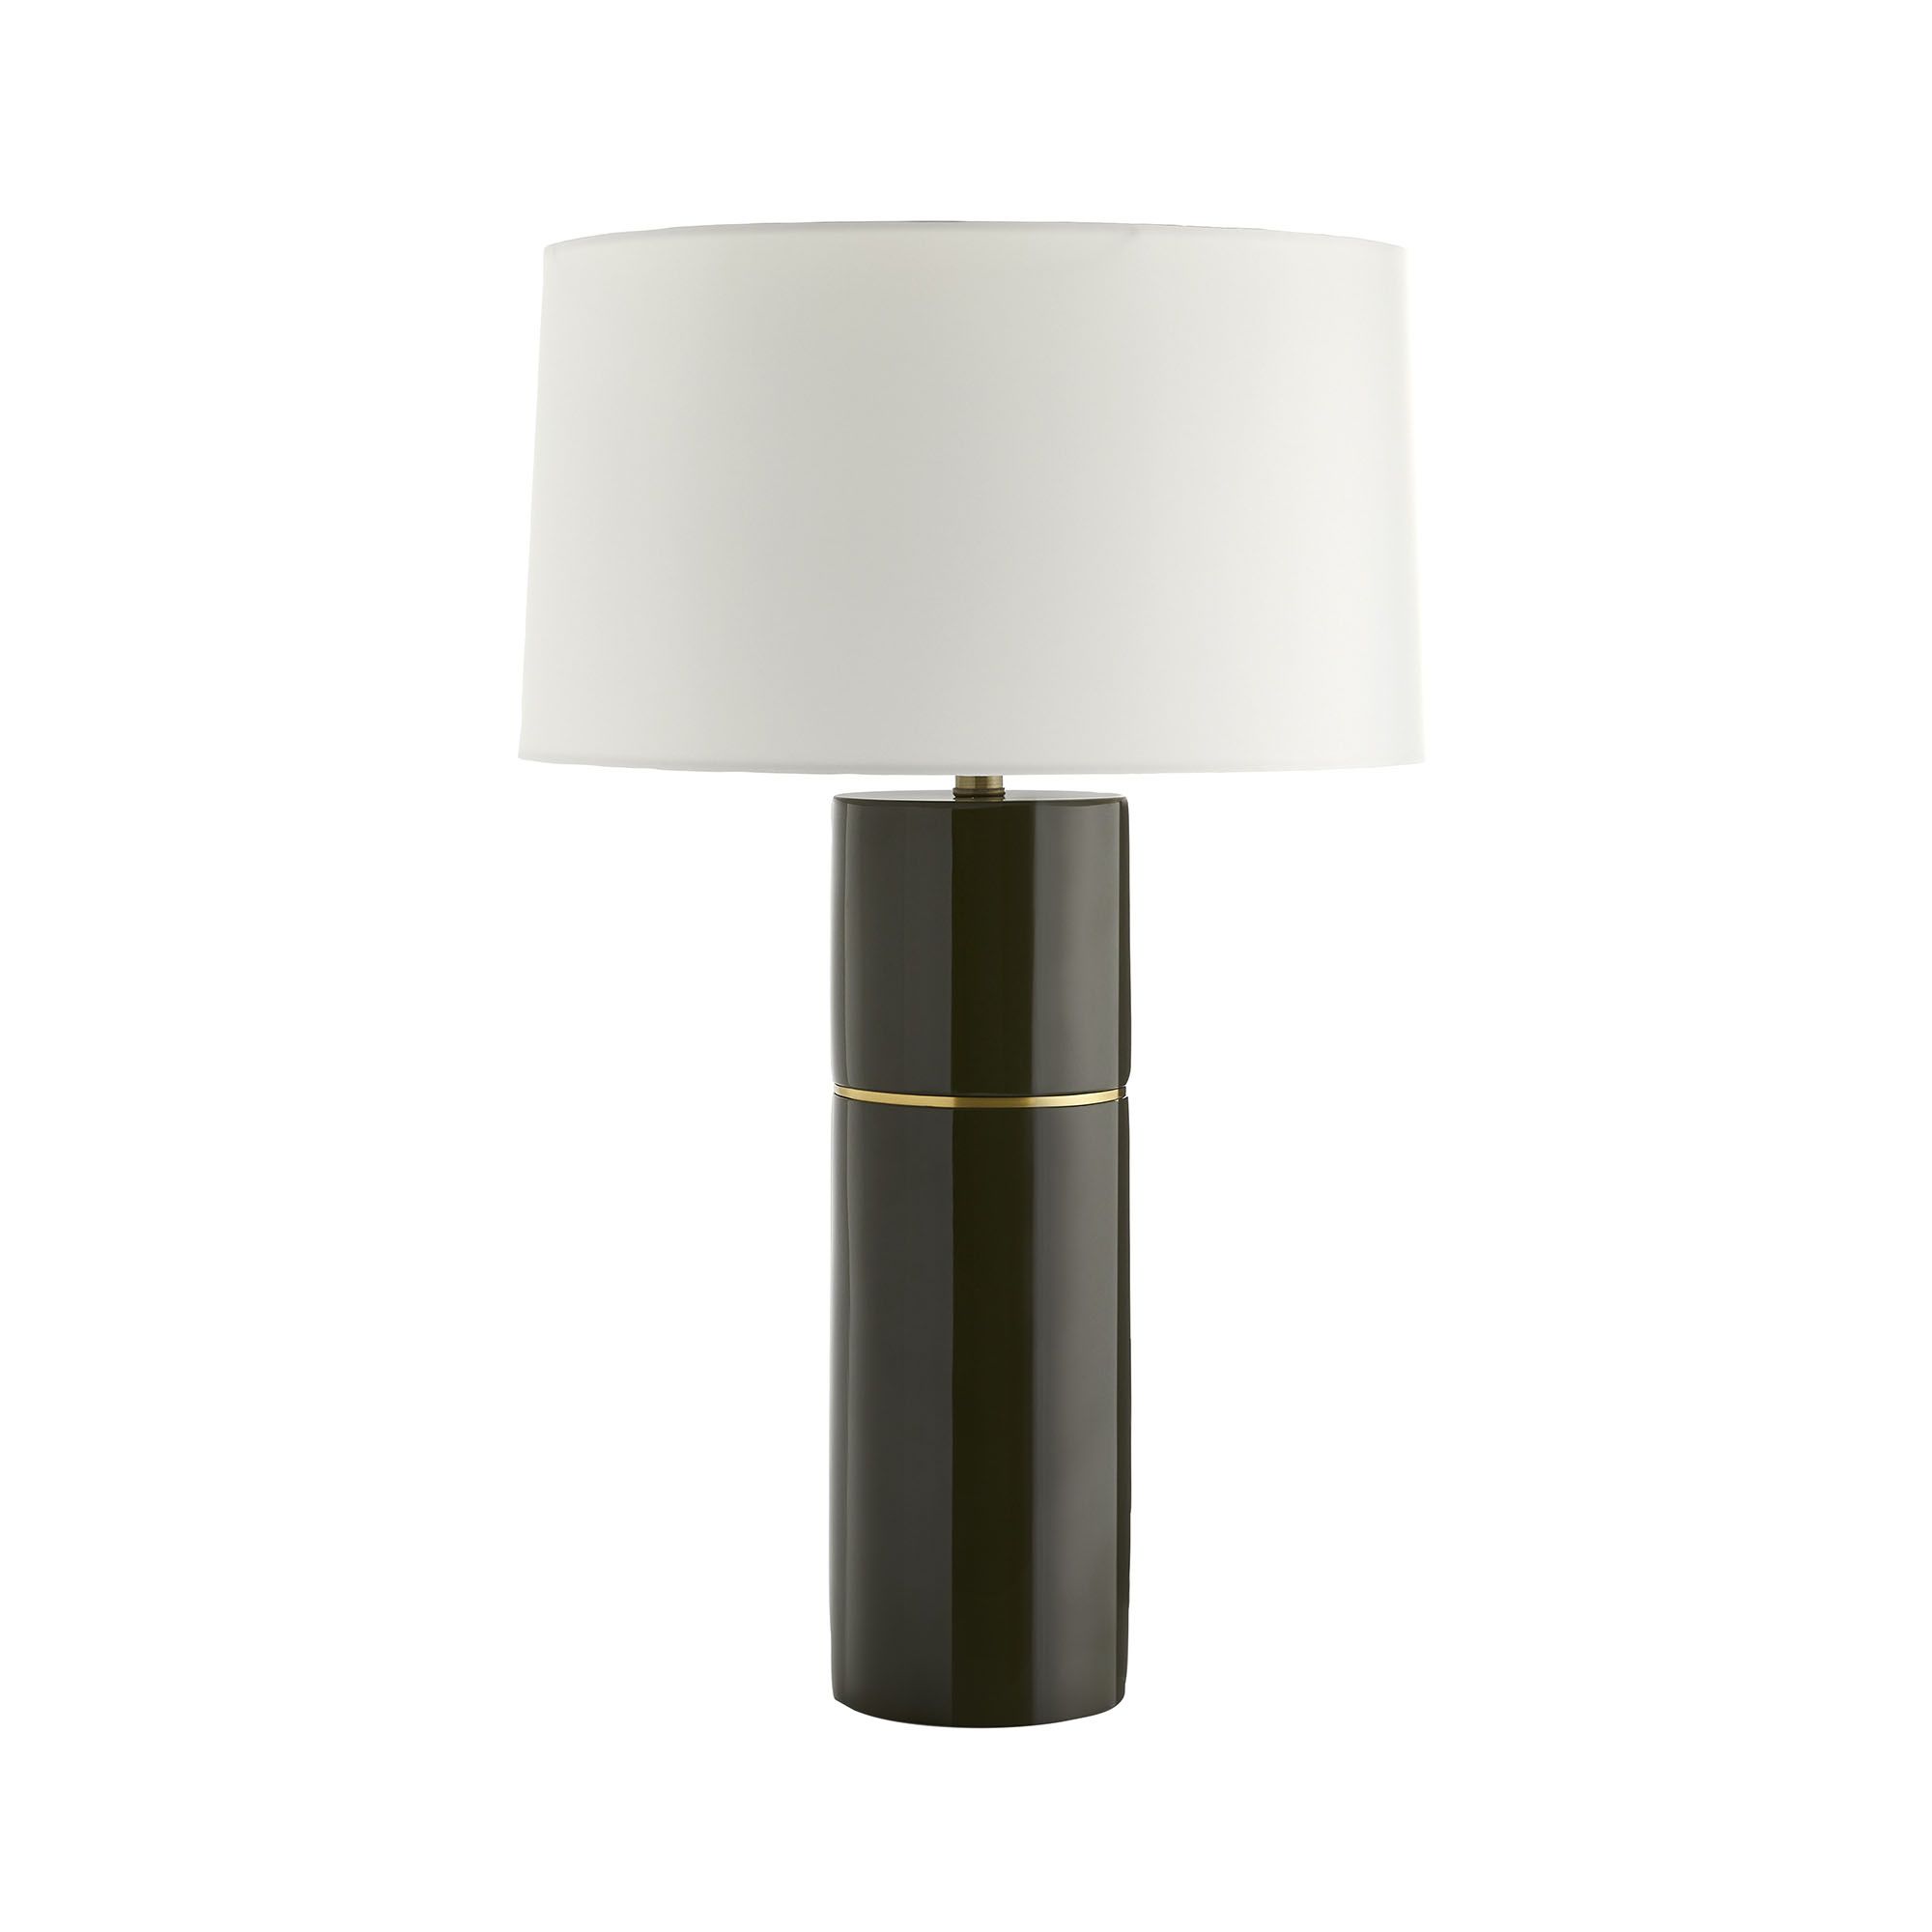 Купить Настольная лампа Seale Lamp в интернет-магазине roooms.ru